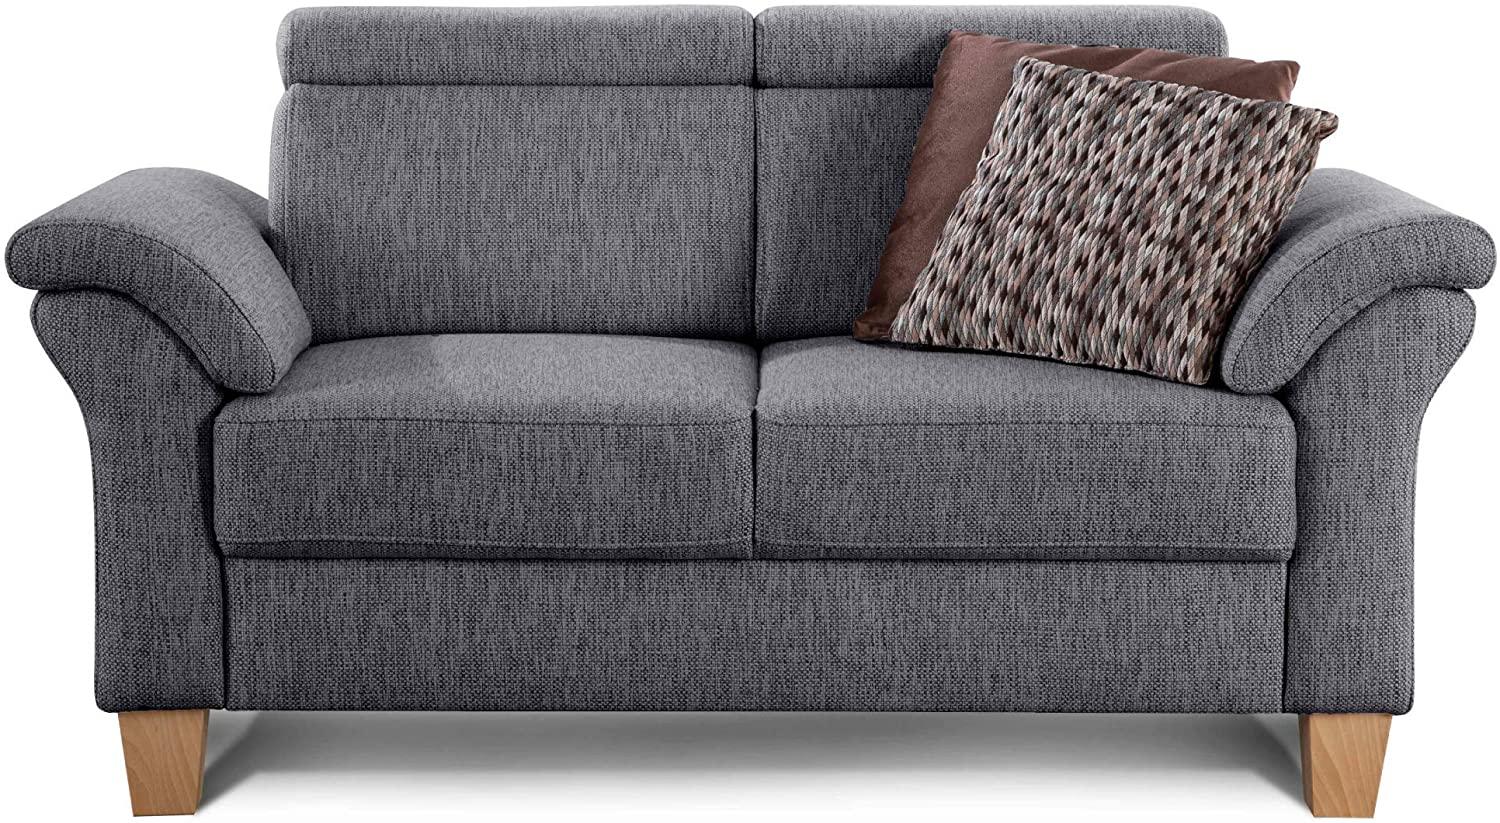 Cavadore 2-Sitzer Sofa Ammerland / Couch mit Federkern im Landhausstil / Inkl. verstellbaren Kopfstützen / 156 x 84 x 93 / Strukturstoff grau Bild 1